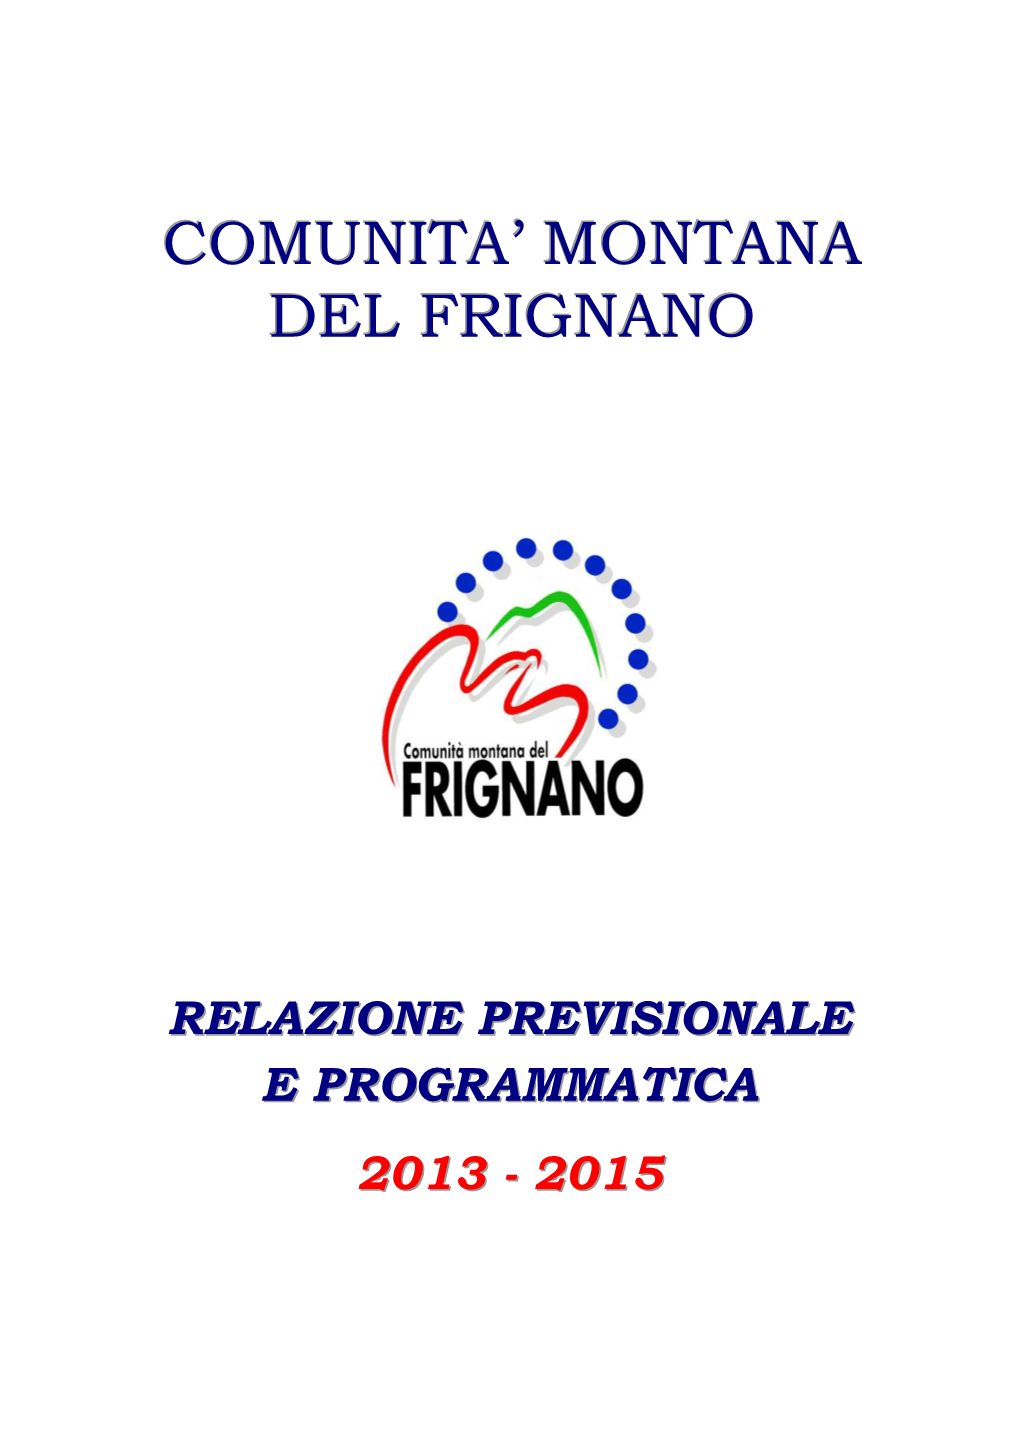 Relazione Previsionale E Programmatica 2013 - 2015………………………………………………………………